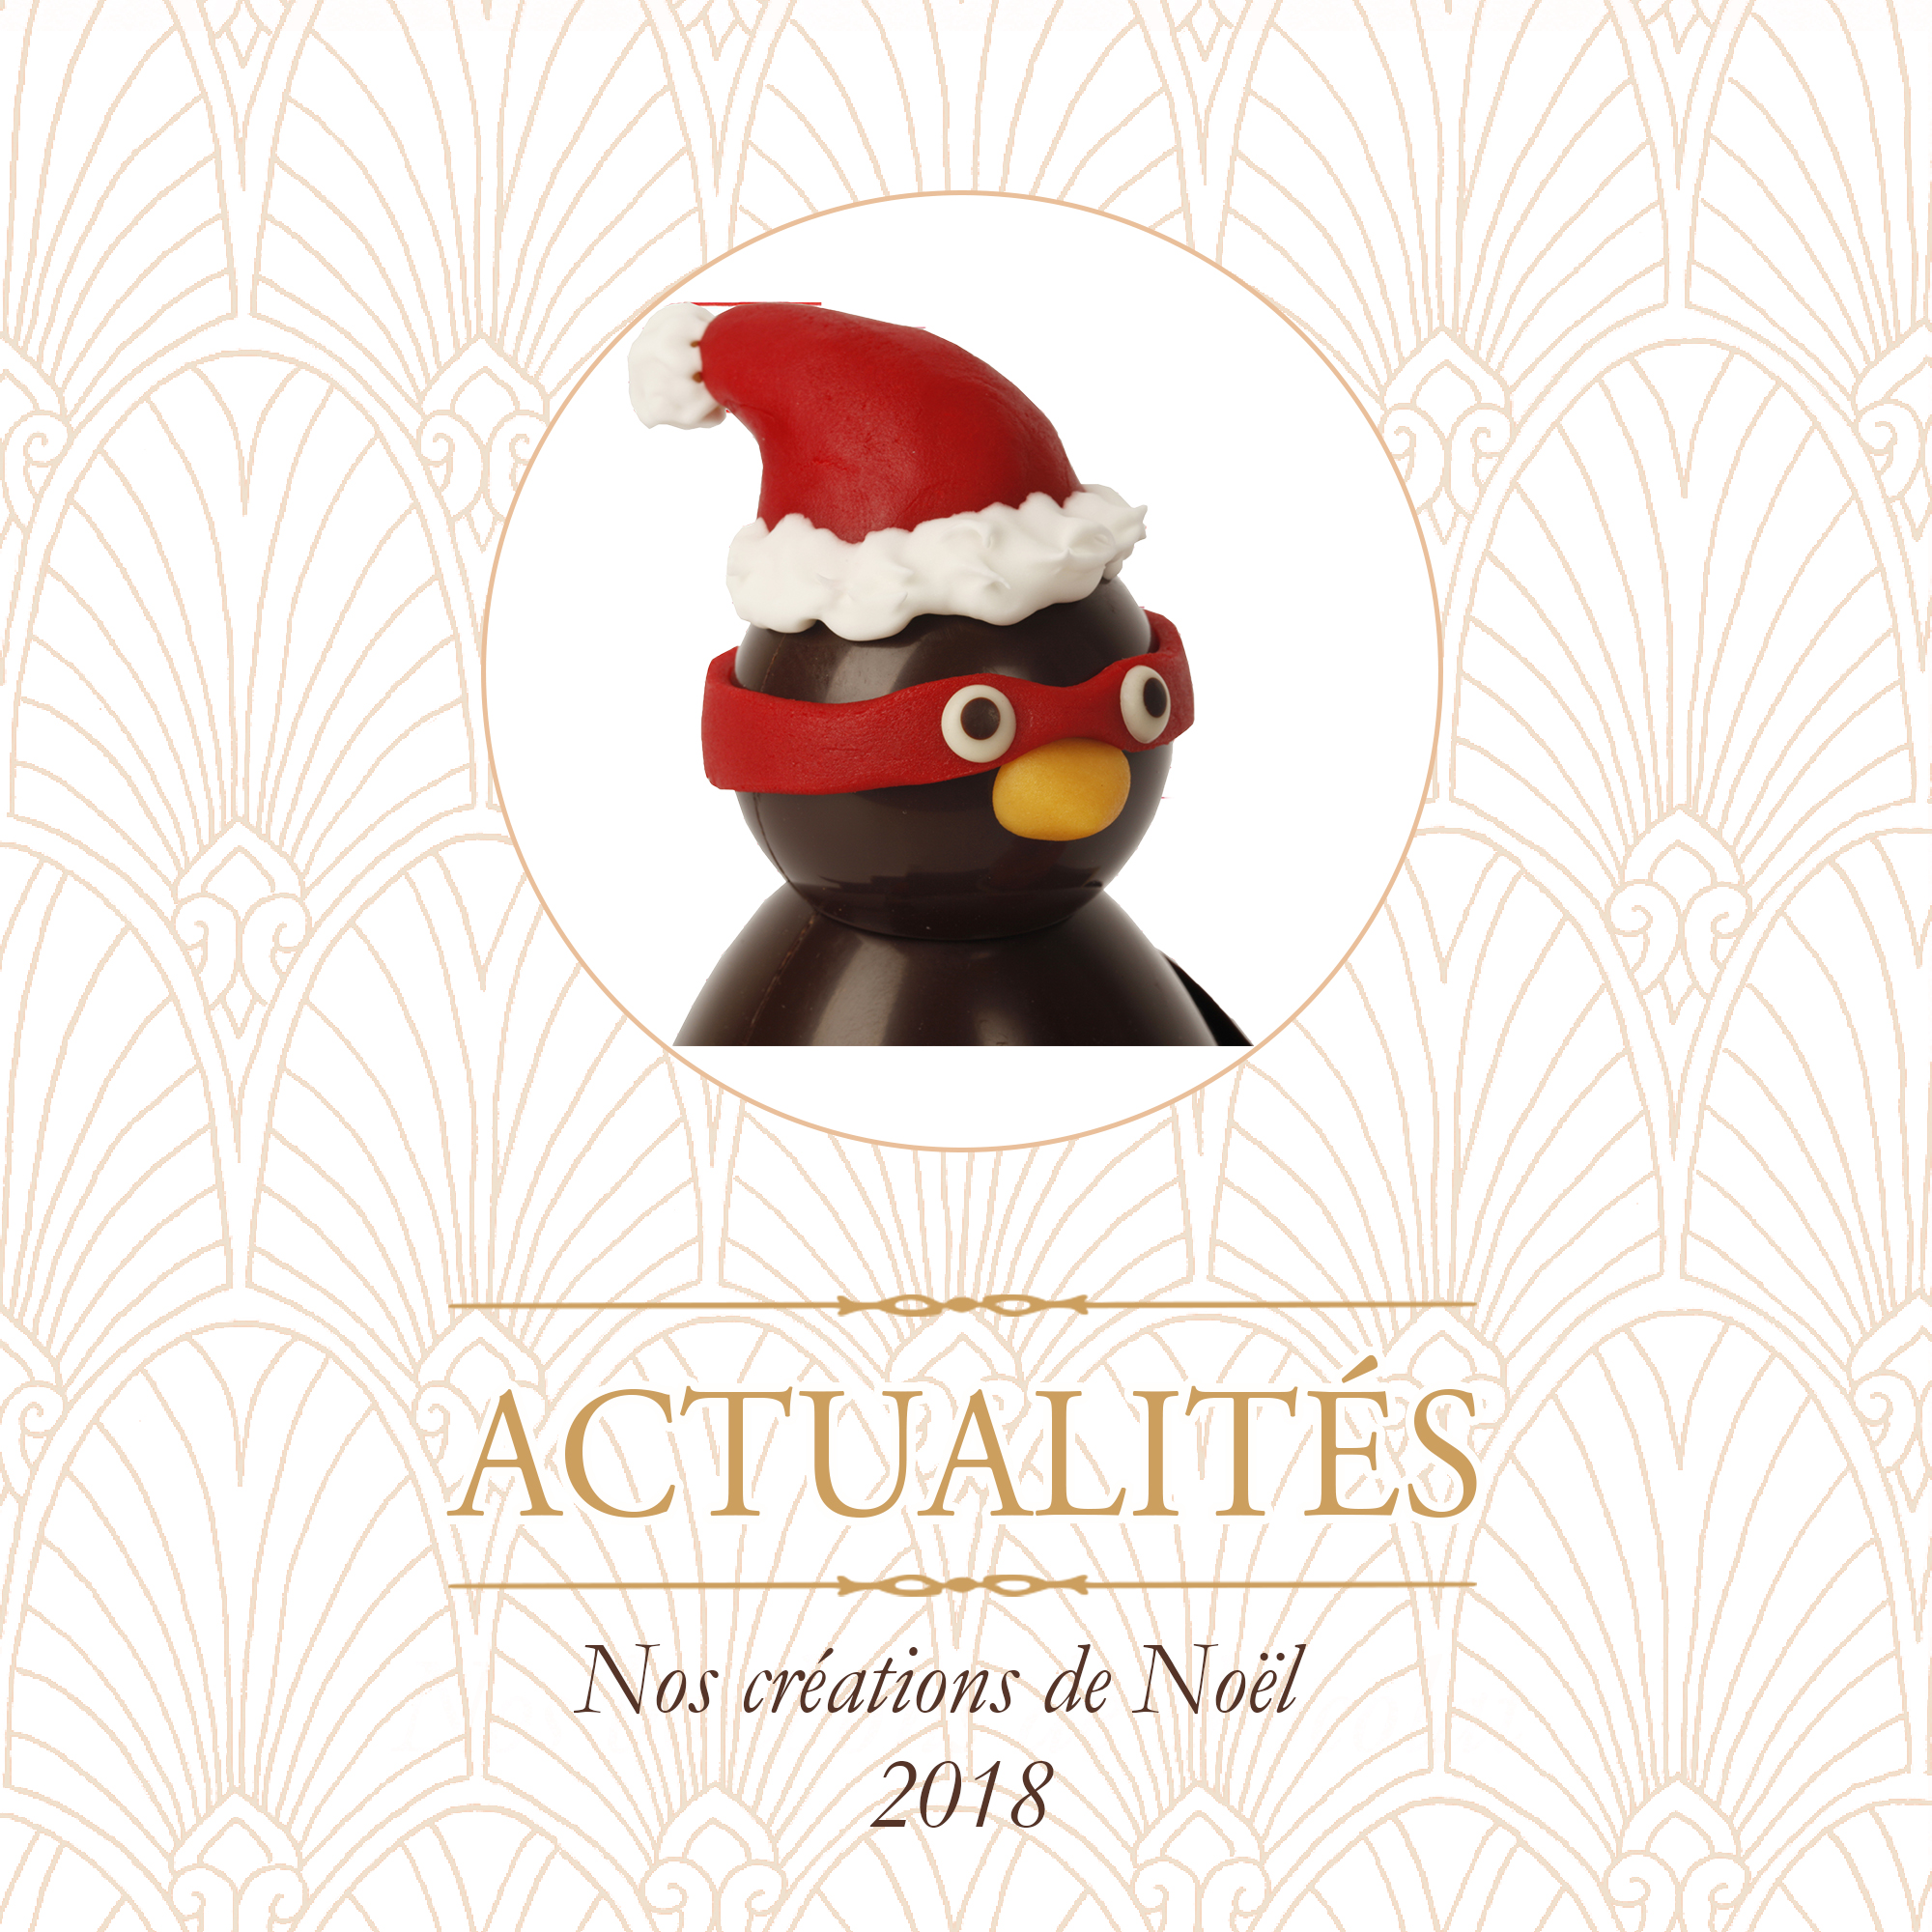 Box Cadeau de Noël pour les Enfants Pingouin et Père-Noël Chocolat